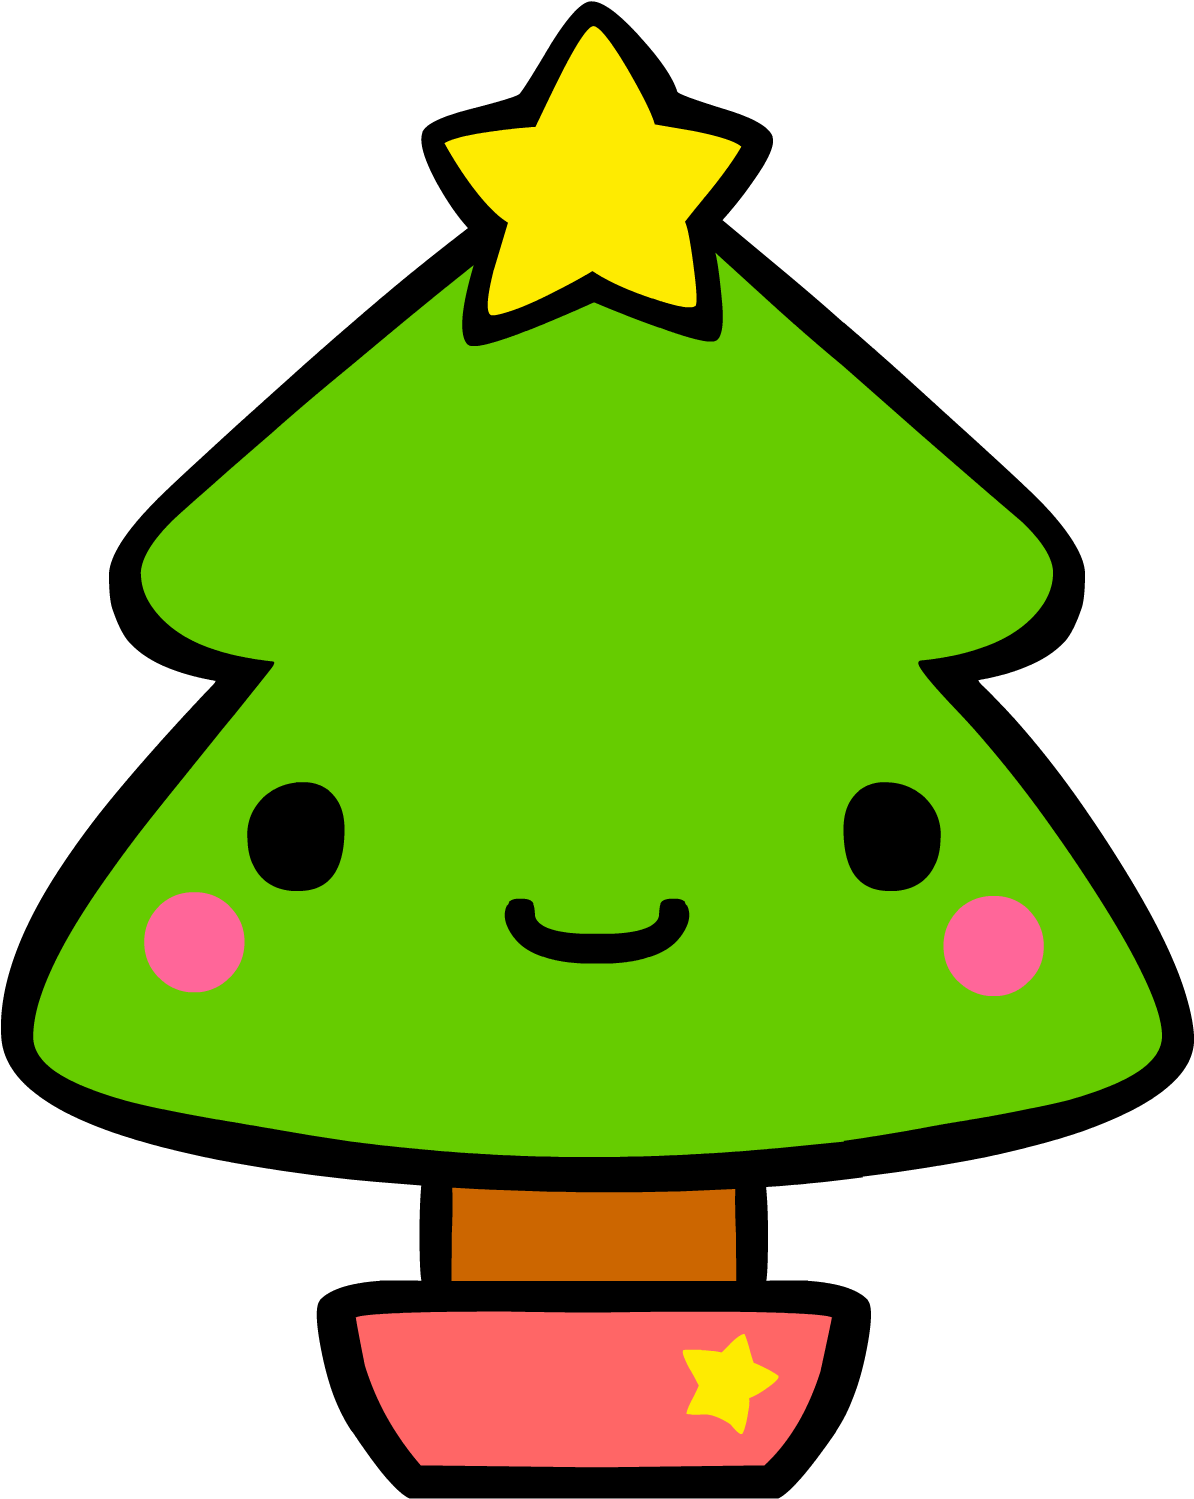 クリスマスツリー2 - Iphone 6s (2000x1667)